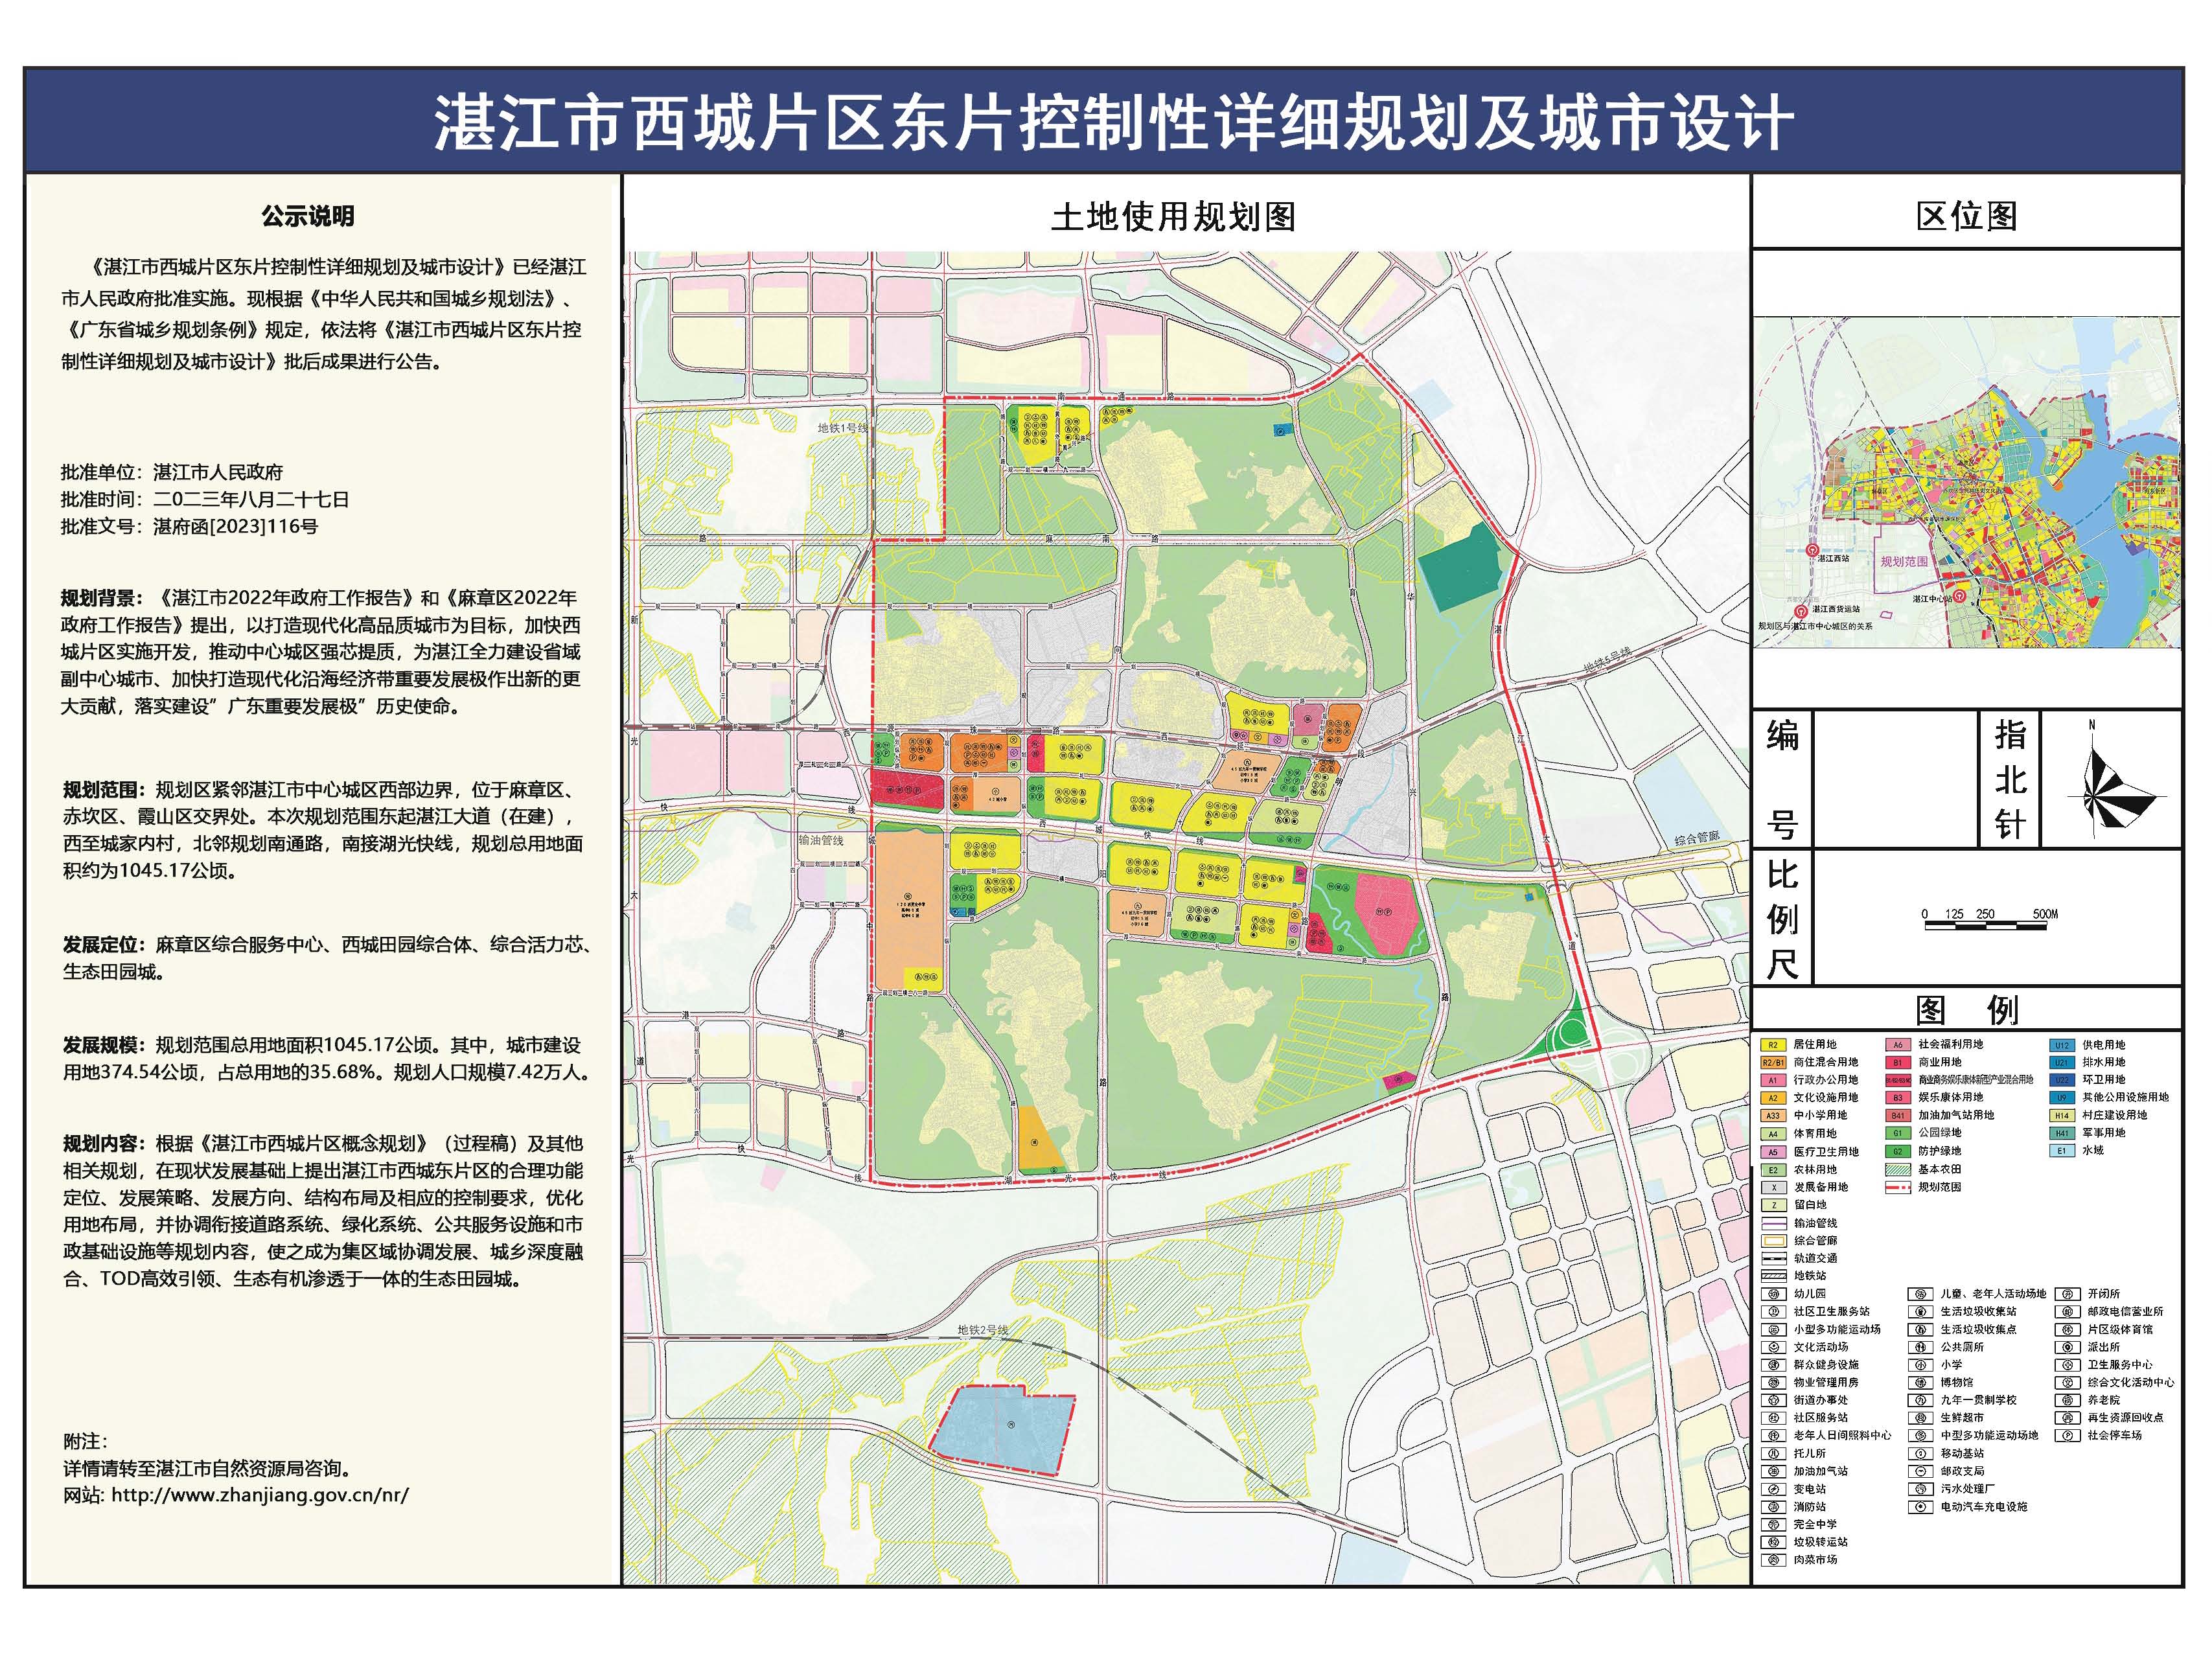 《湛江西城东片区控制性详细规划及城市设计》批后公告_页面_1.jpg